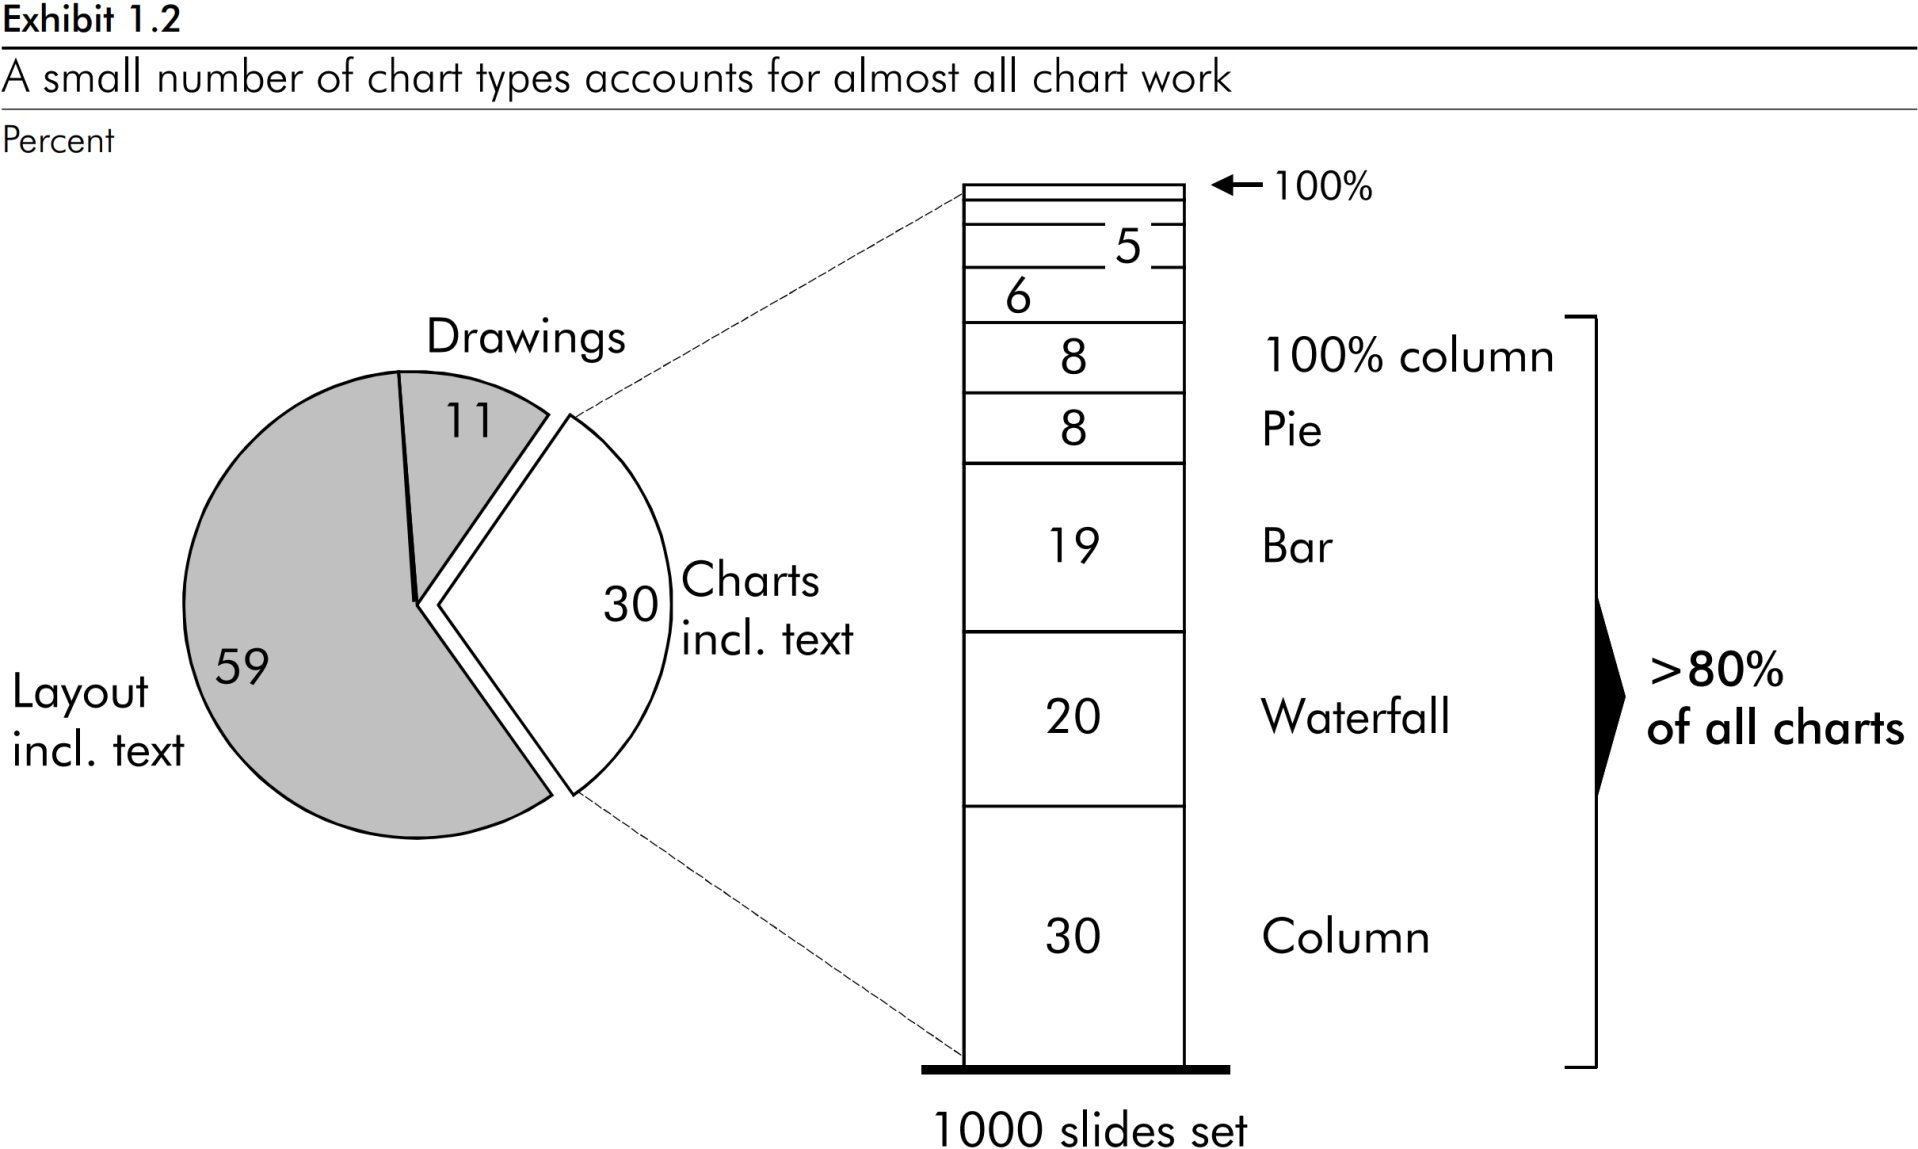 Круговая диаграмма, которая показывает, что 85 % диаграмм в компании относятся к пяти основным типам: диаграмма с накоплением, круговая диаграмма, линейчатая диаграмма, каскадная диаграмма и гистограмма.